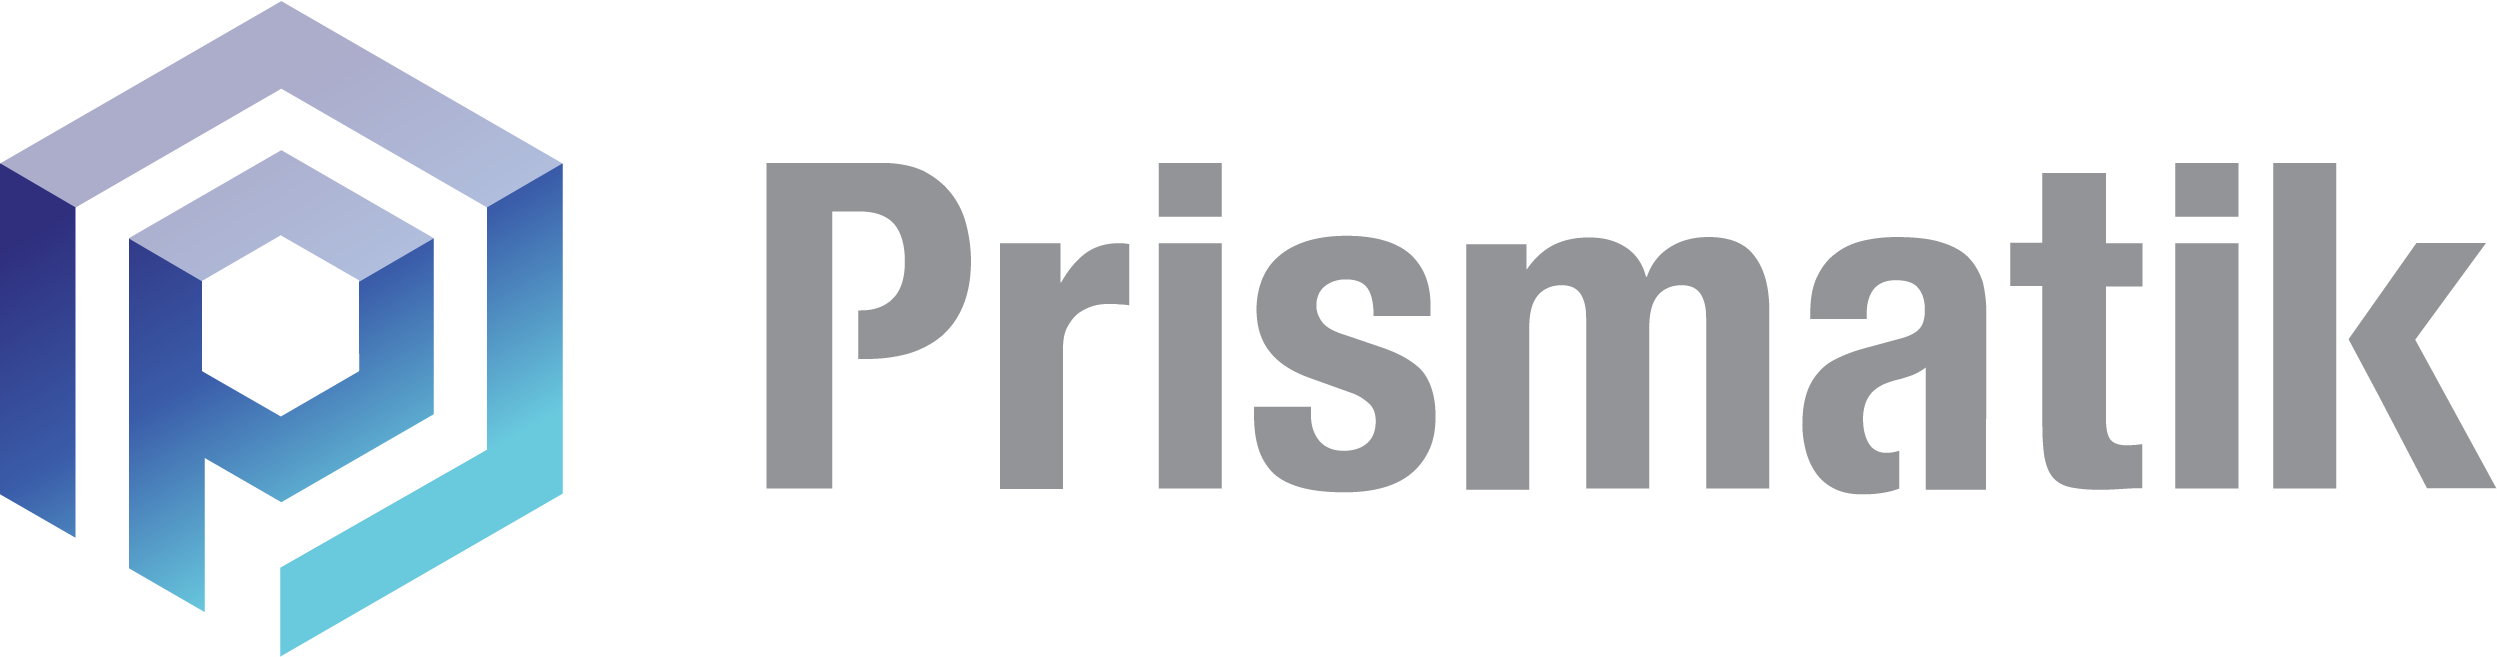 Prismatik-logo-blue-gradient